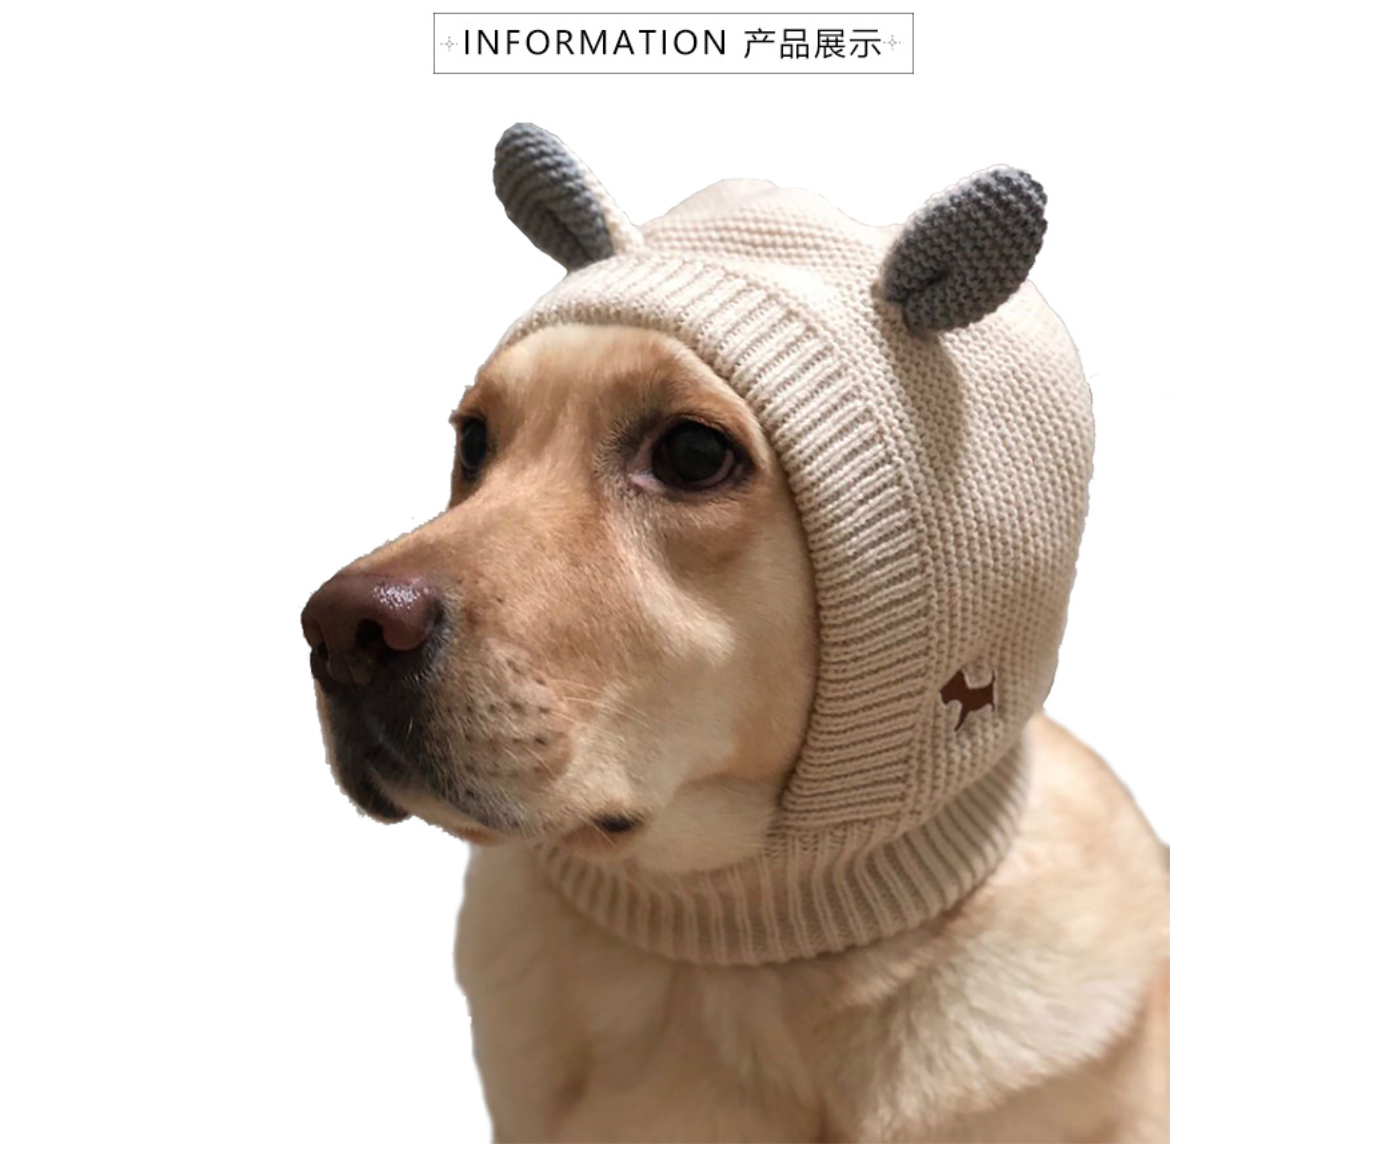 หมวกสุนัข หมวกไหมพรม หมวกหูกระต่าย เสื้อผ้าสุนัข เครื่องประดับสุนัข ชุดหมา เสื้อผ้าสัตว์เลี้ยง พร้อมส่ง